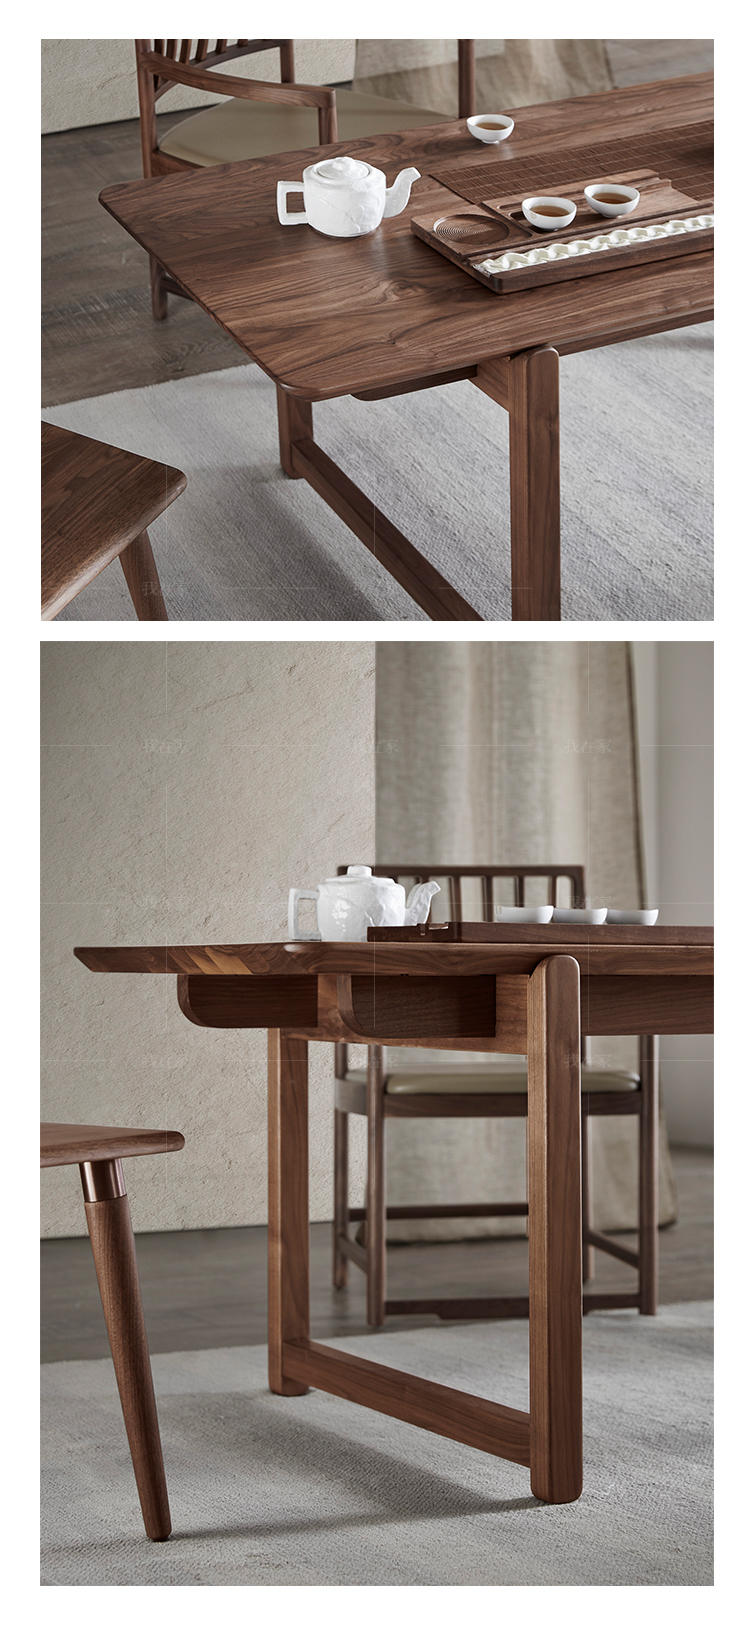 新中式风格故知茶桌的家具详细介绍